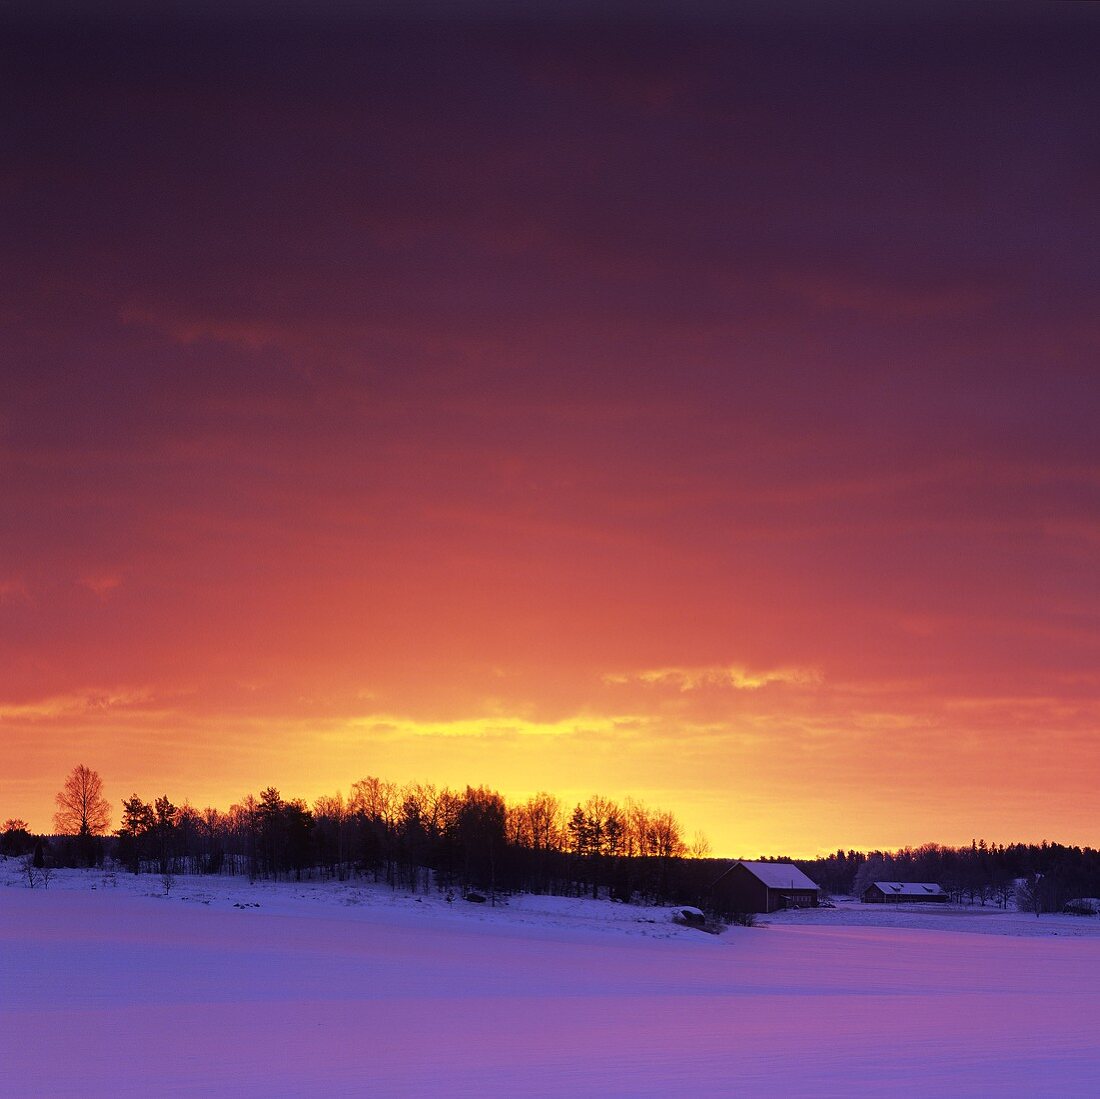 Sonnenuntergang vor schneebedeckter Landschaft